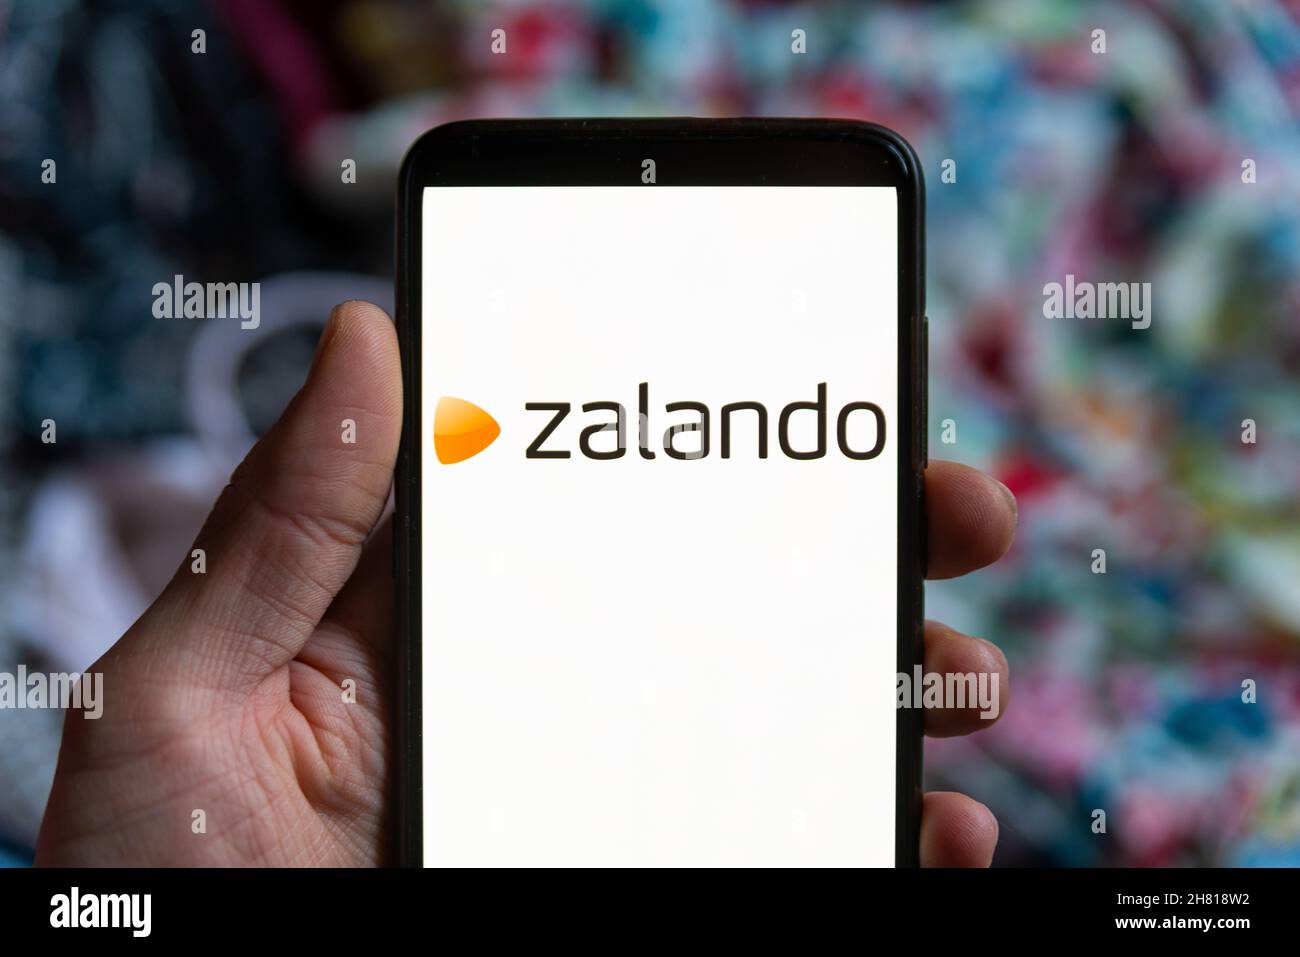 The fashion retailer Zalando mobile app logo is seen on the screen of a ...